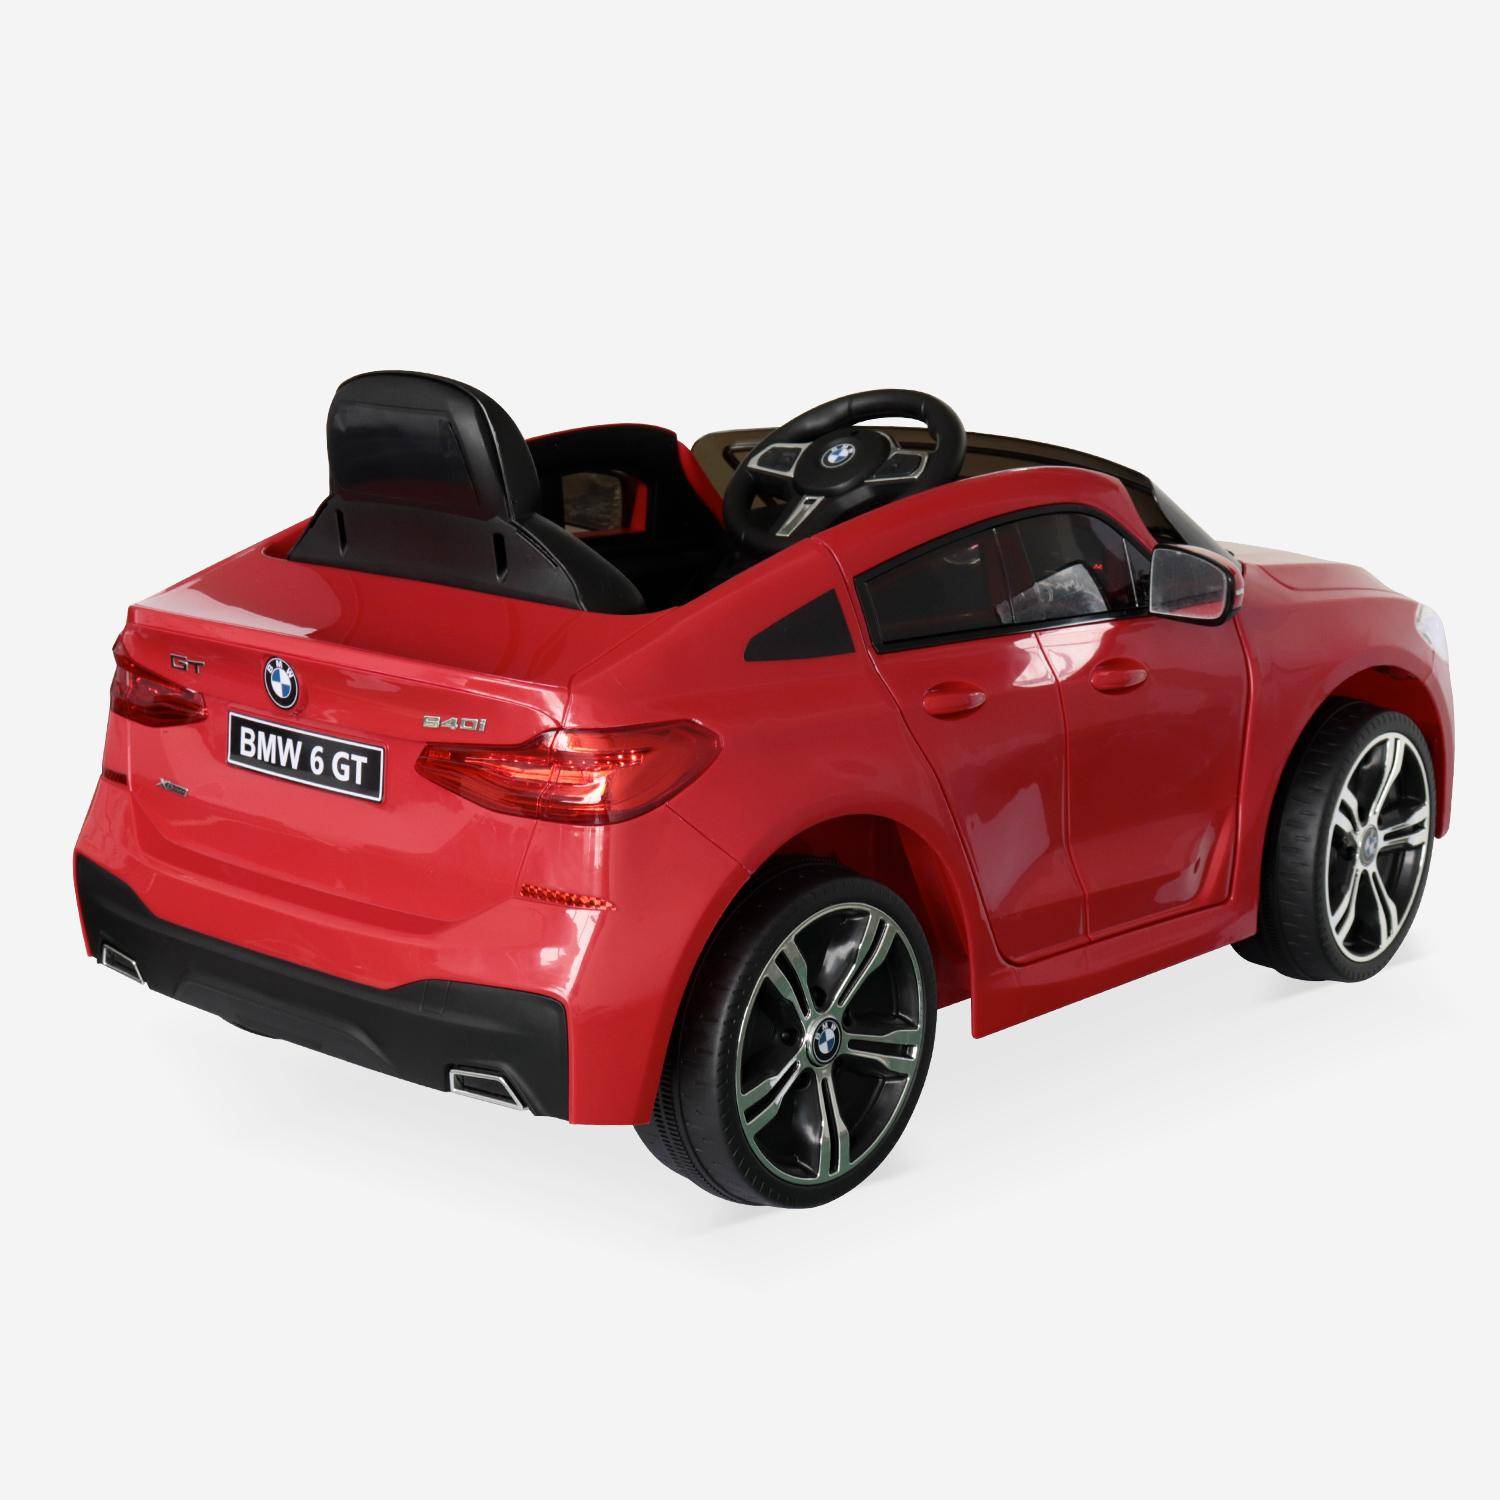 BMW Série 6 GT rouge, voiture électrique pour enfants 12V 4 Ah, 1 place, avec autoradio et télécommande,sweeek,Photo3